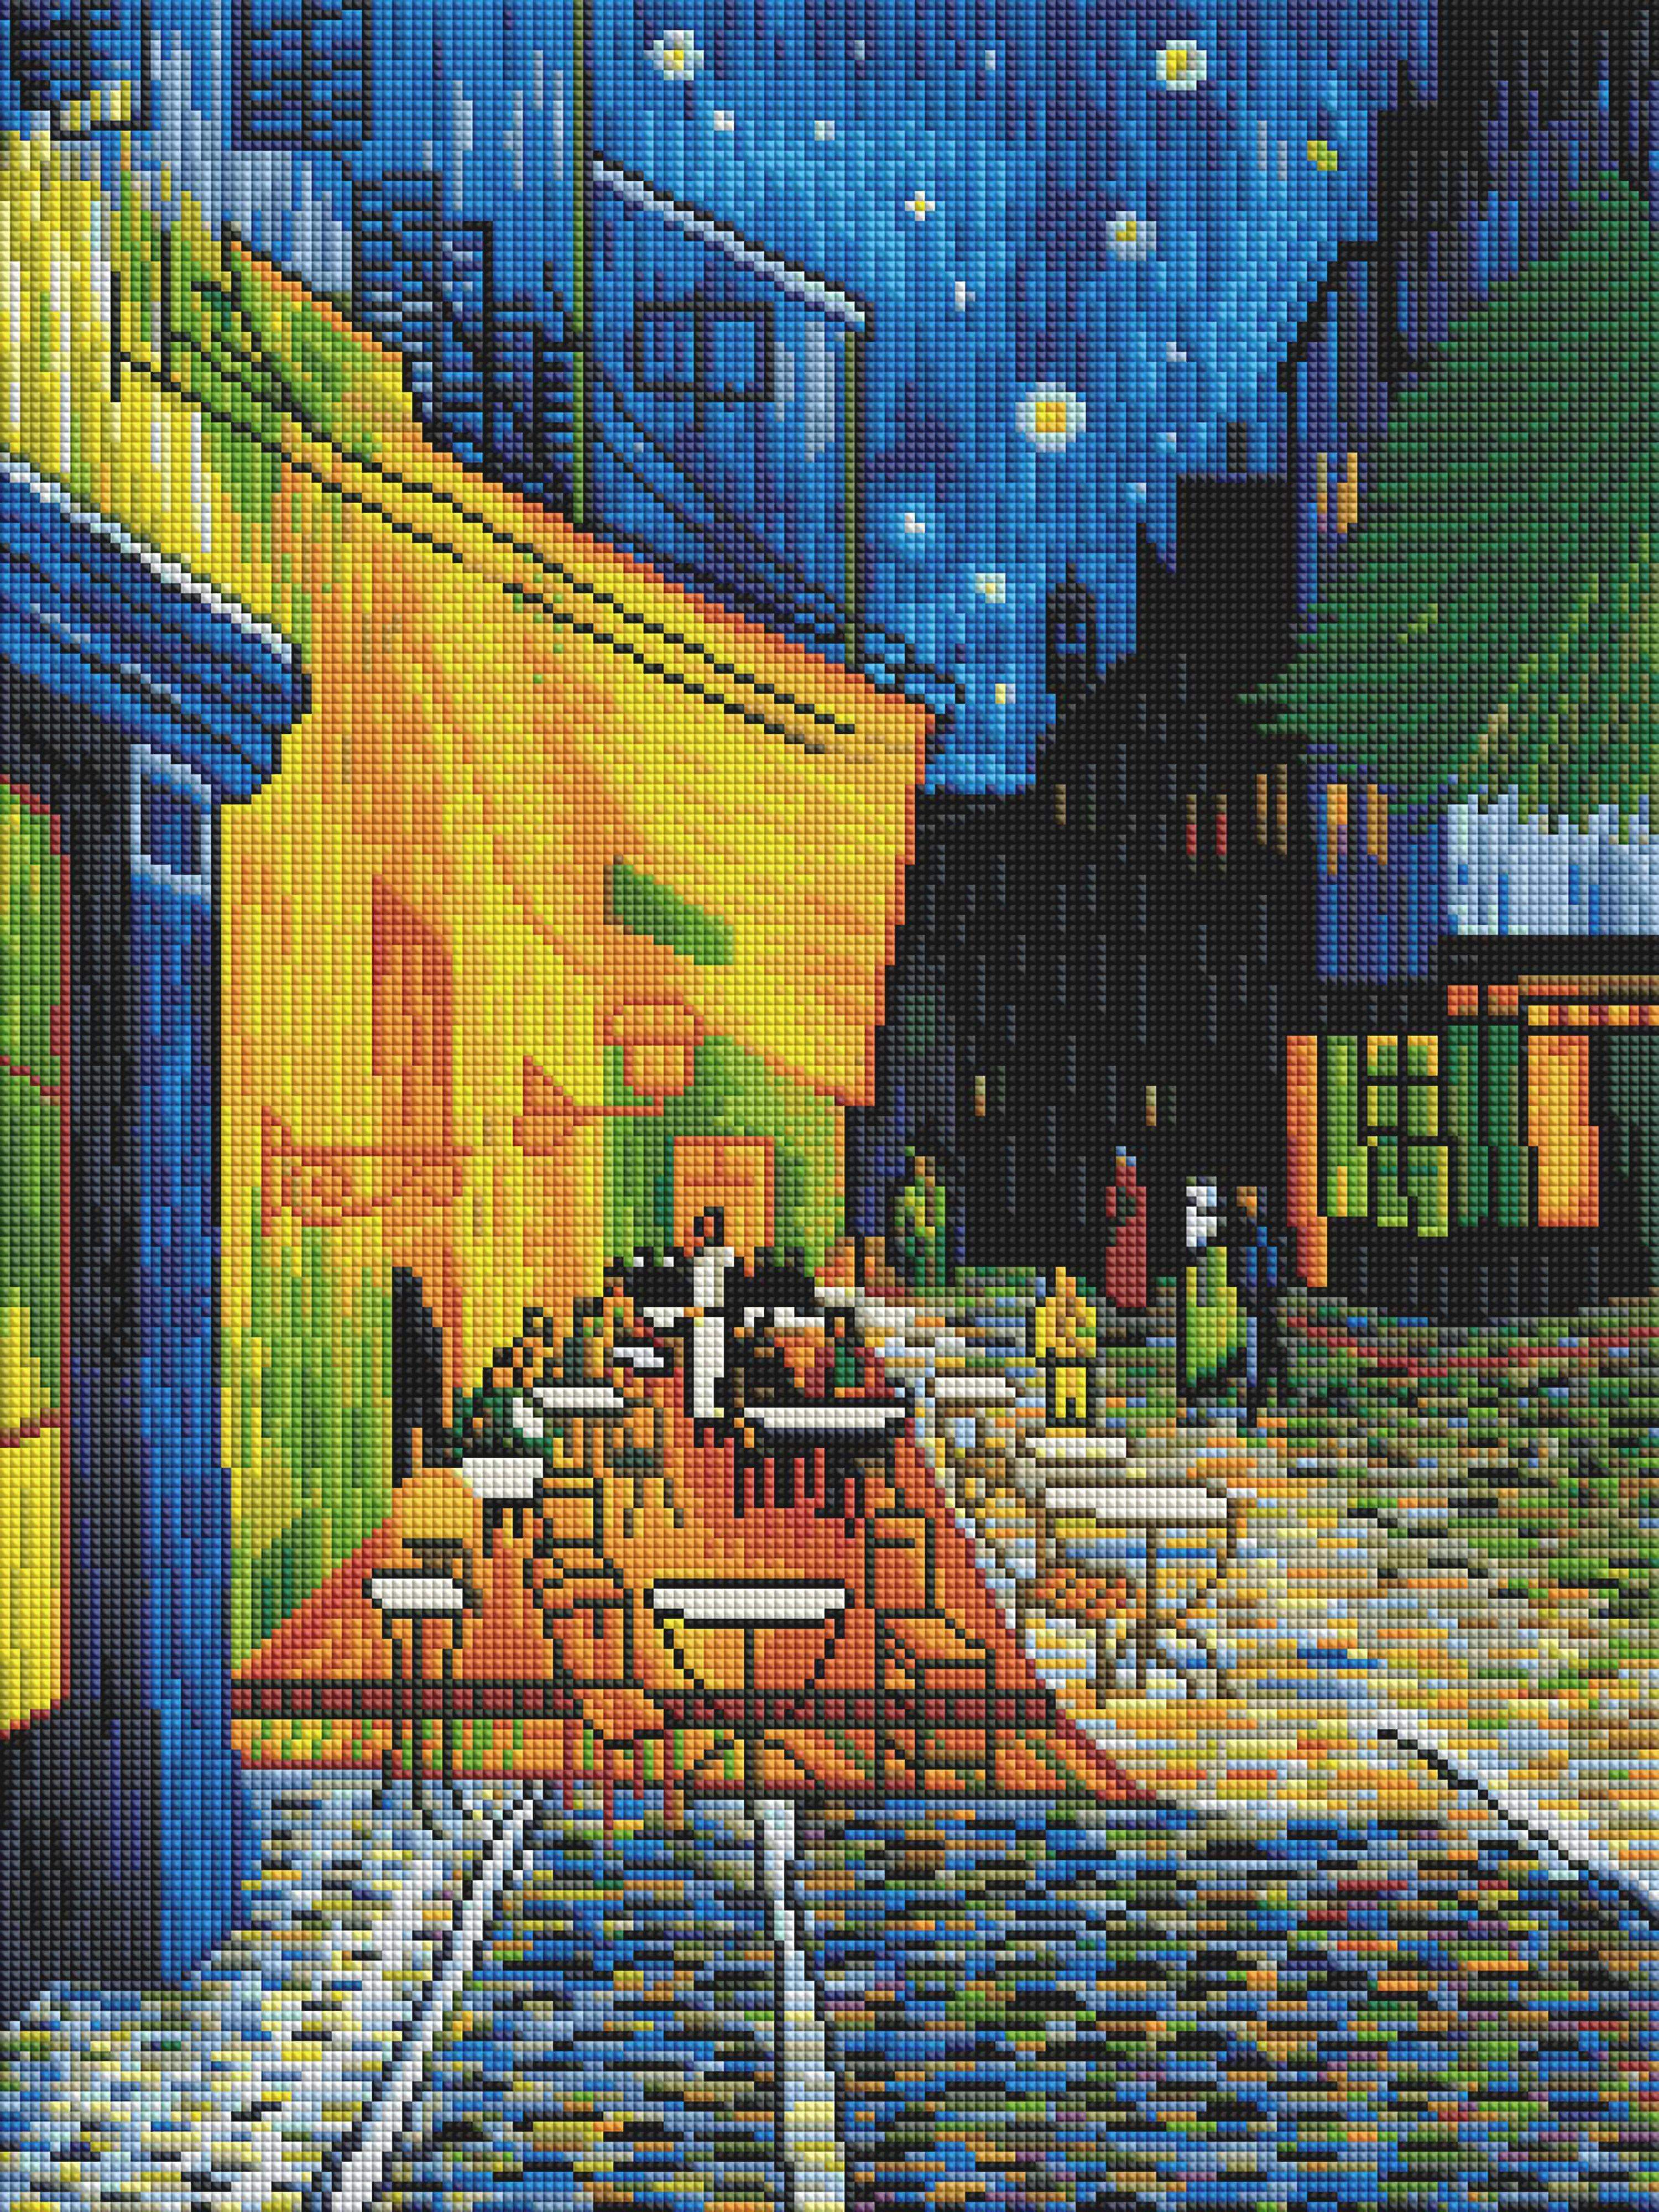 Diamond Dotz - Diamond Painting Kit - Starry Night (Van Gogh